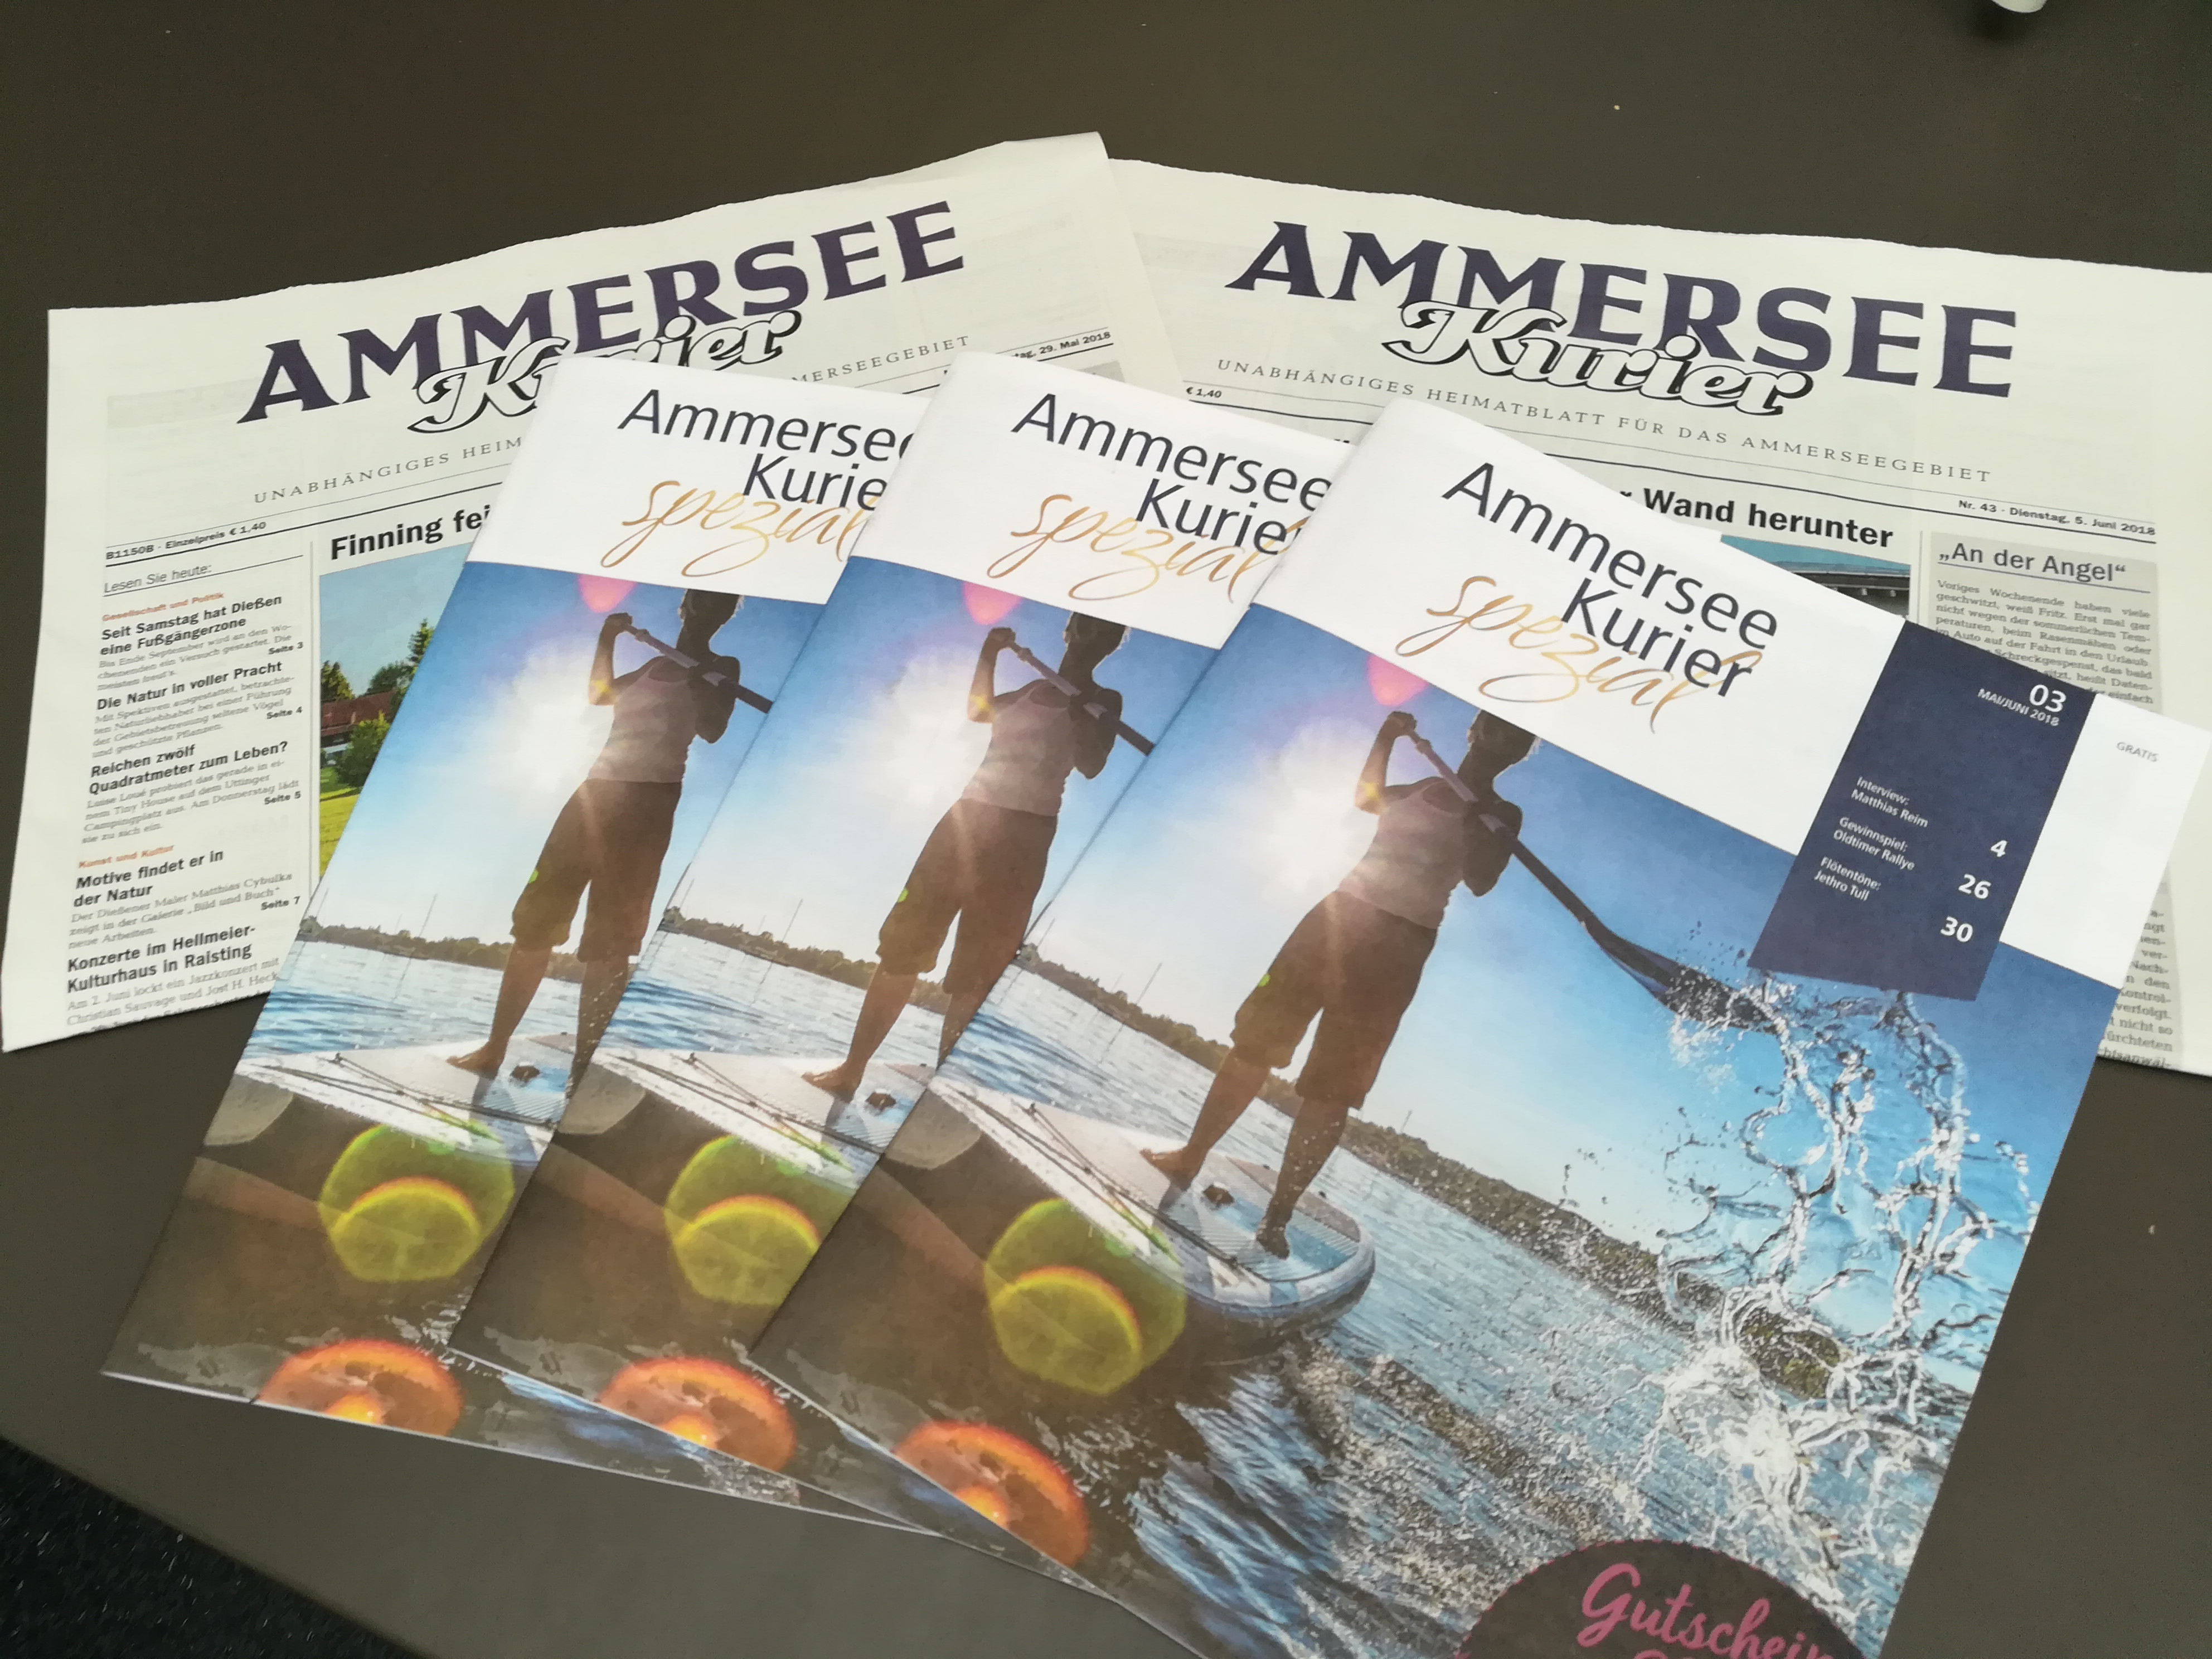 Ammersee Kurier - Eine Zeitung rund um das Ammerseegebiet